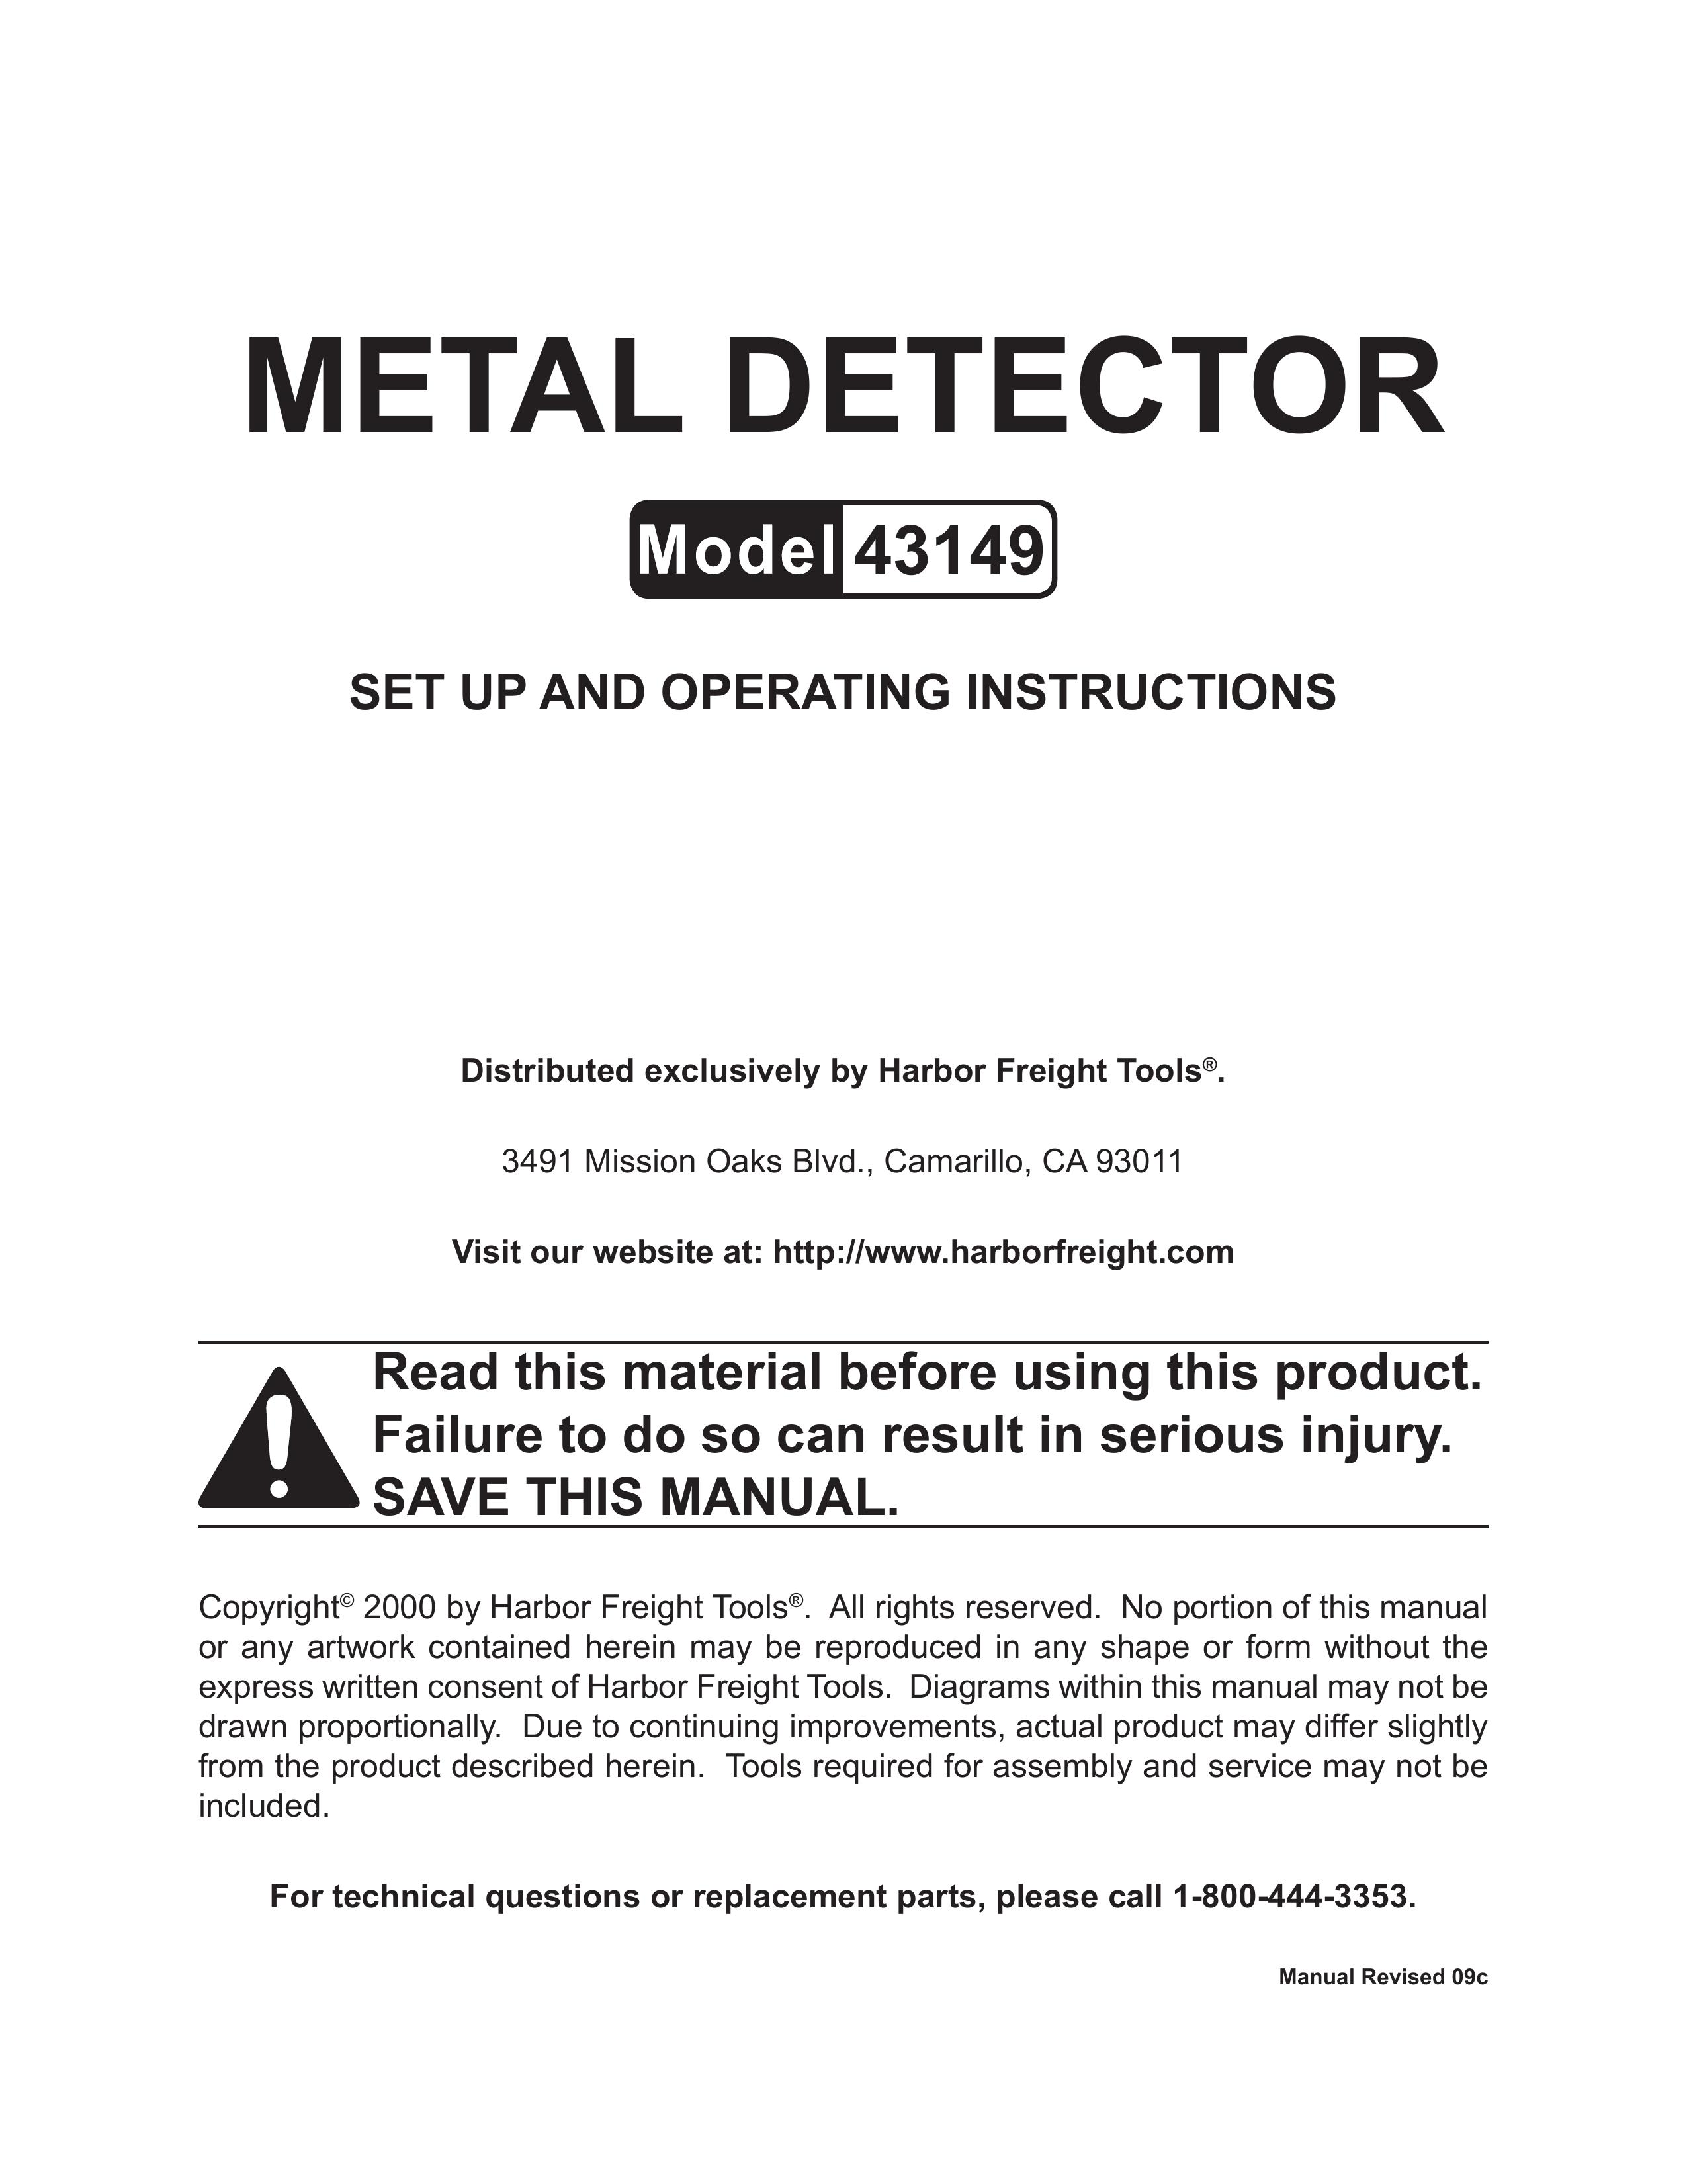 Harbor Freight Tools 43149 Metal Detector User Manual